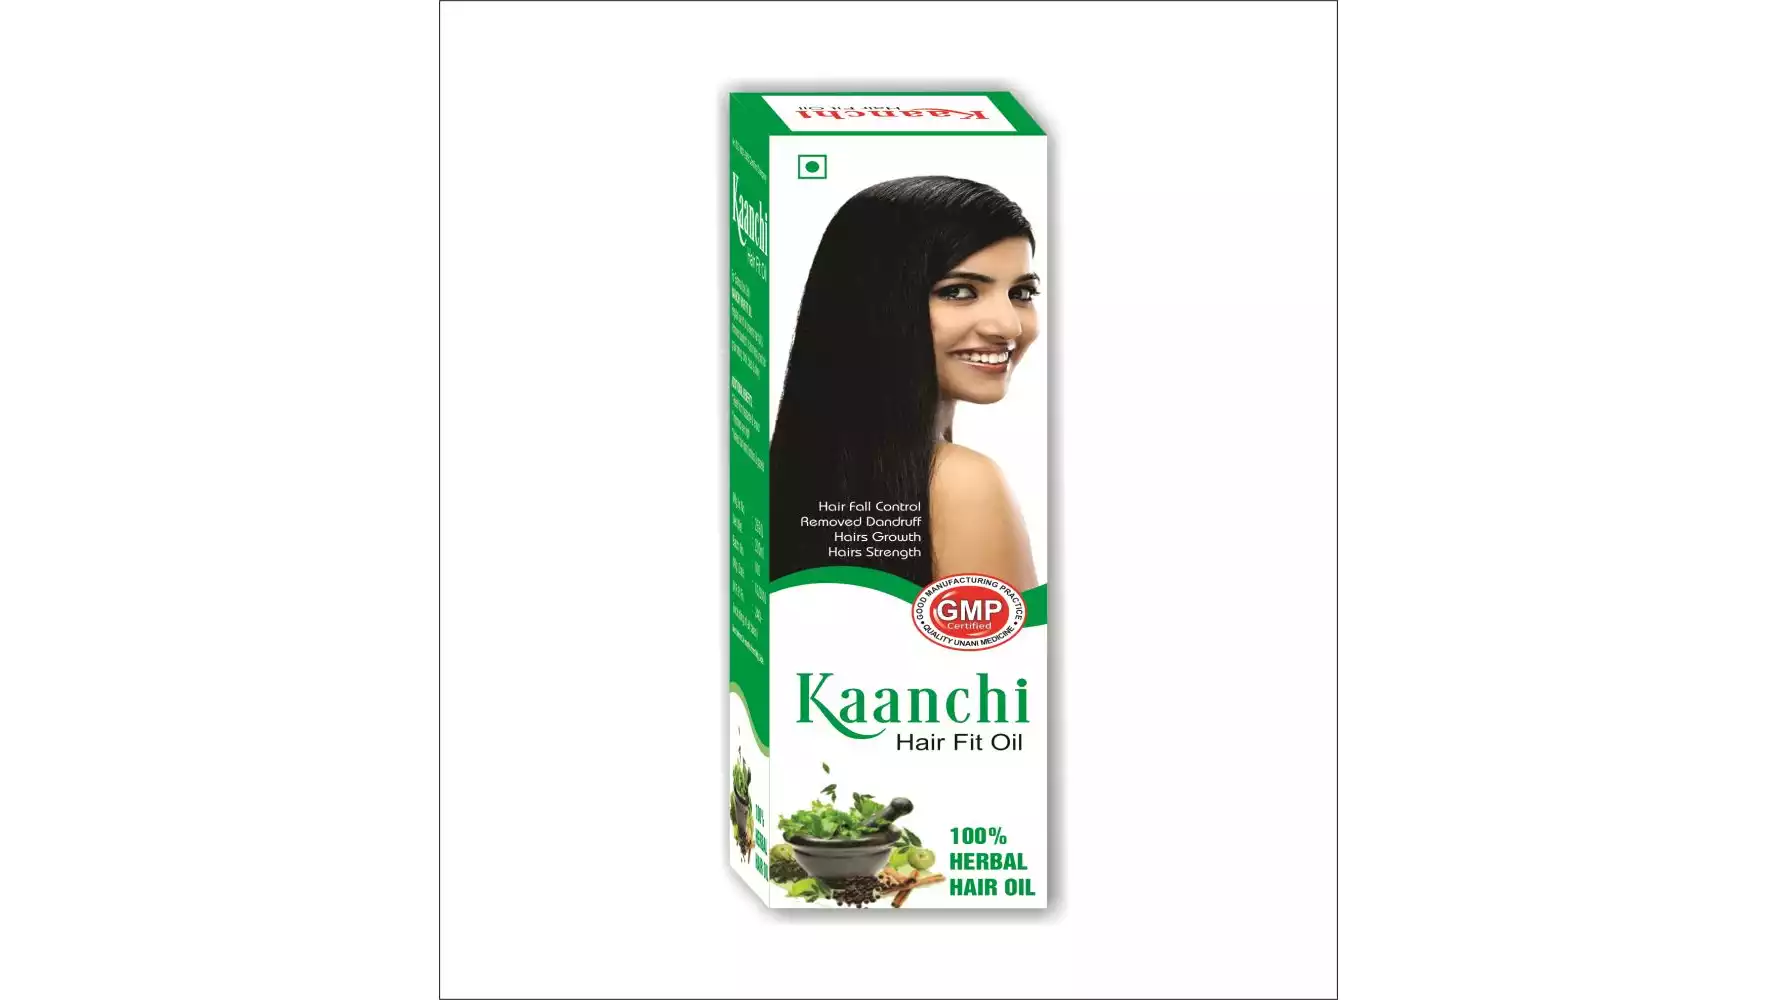 IMC Kaanchi Hair Fit Oil (200ml)